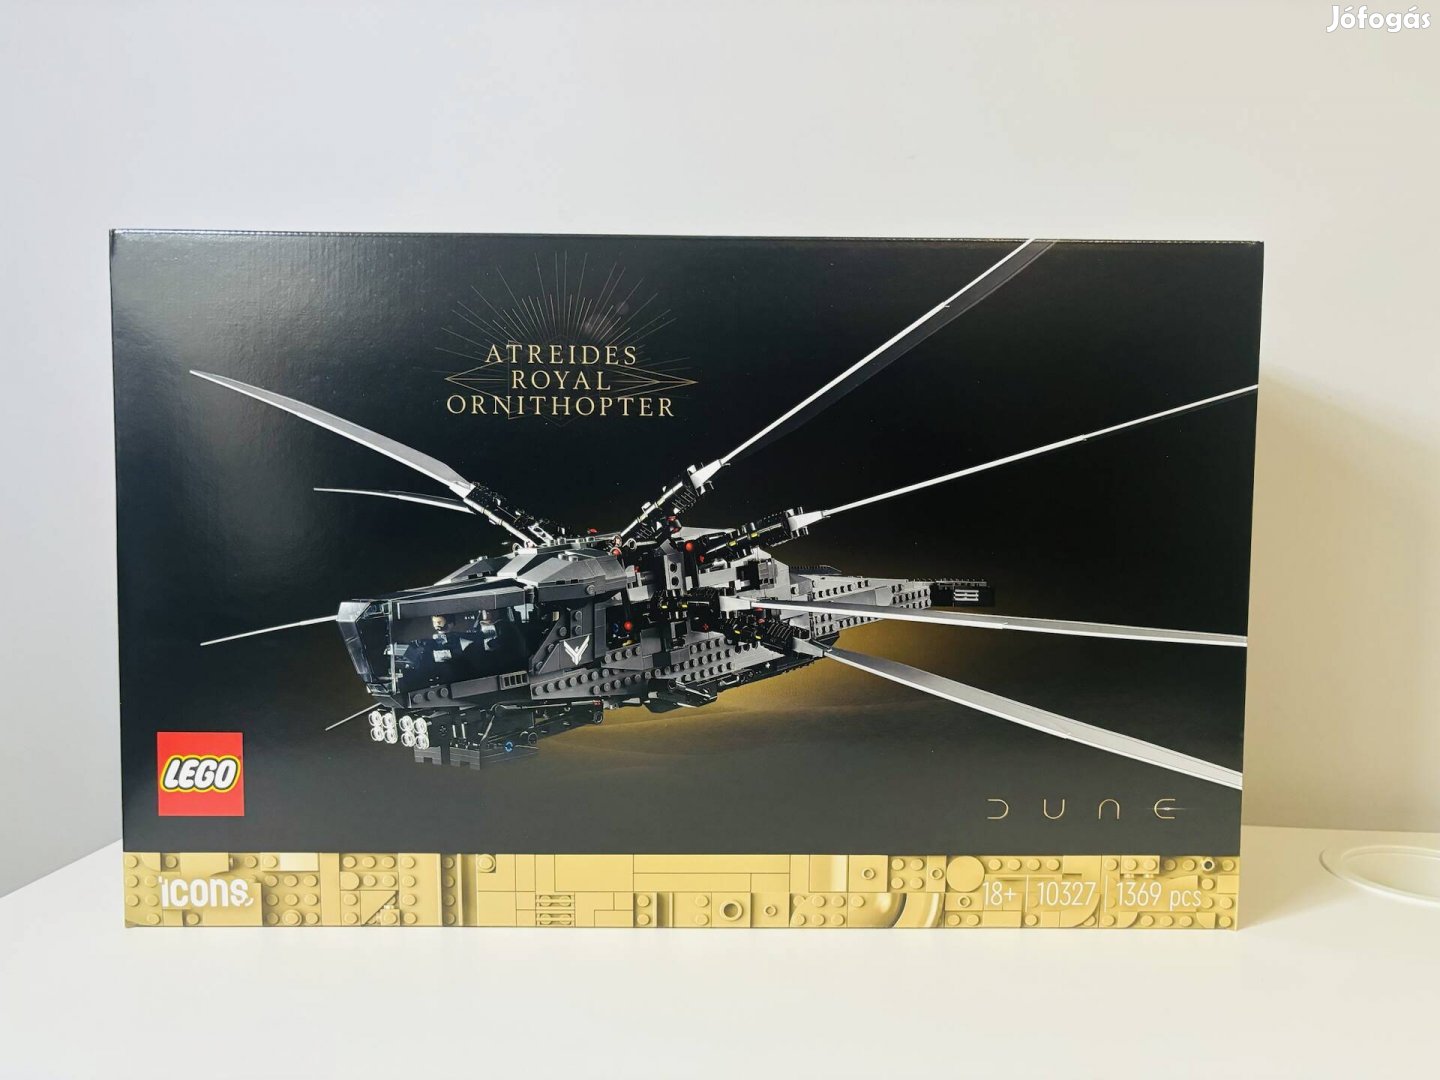 10327 Lego Dűne: Atreides Royal Ornithopter